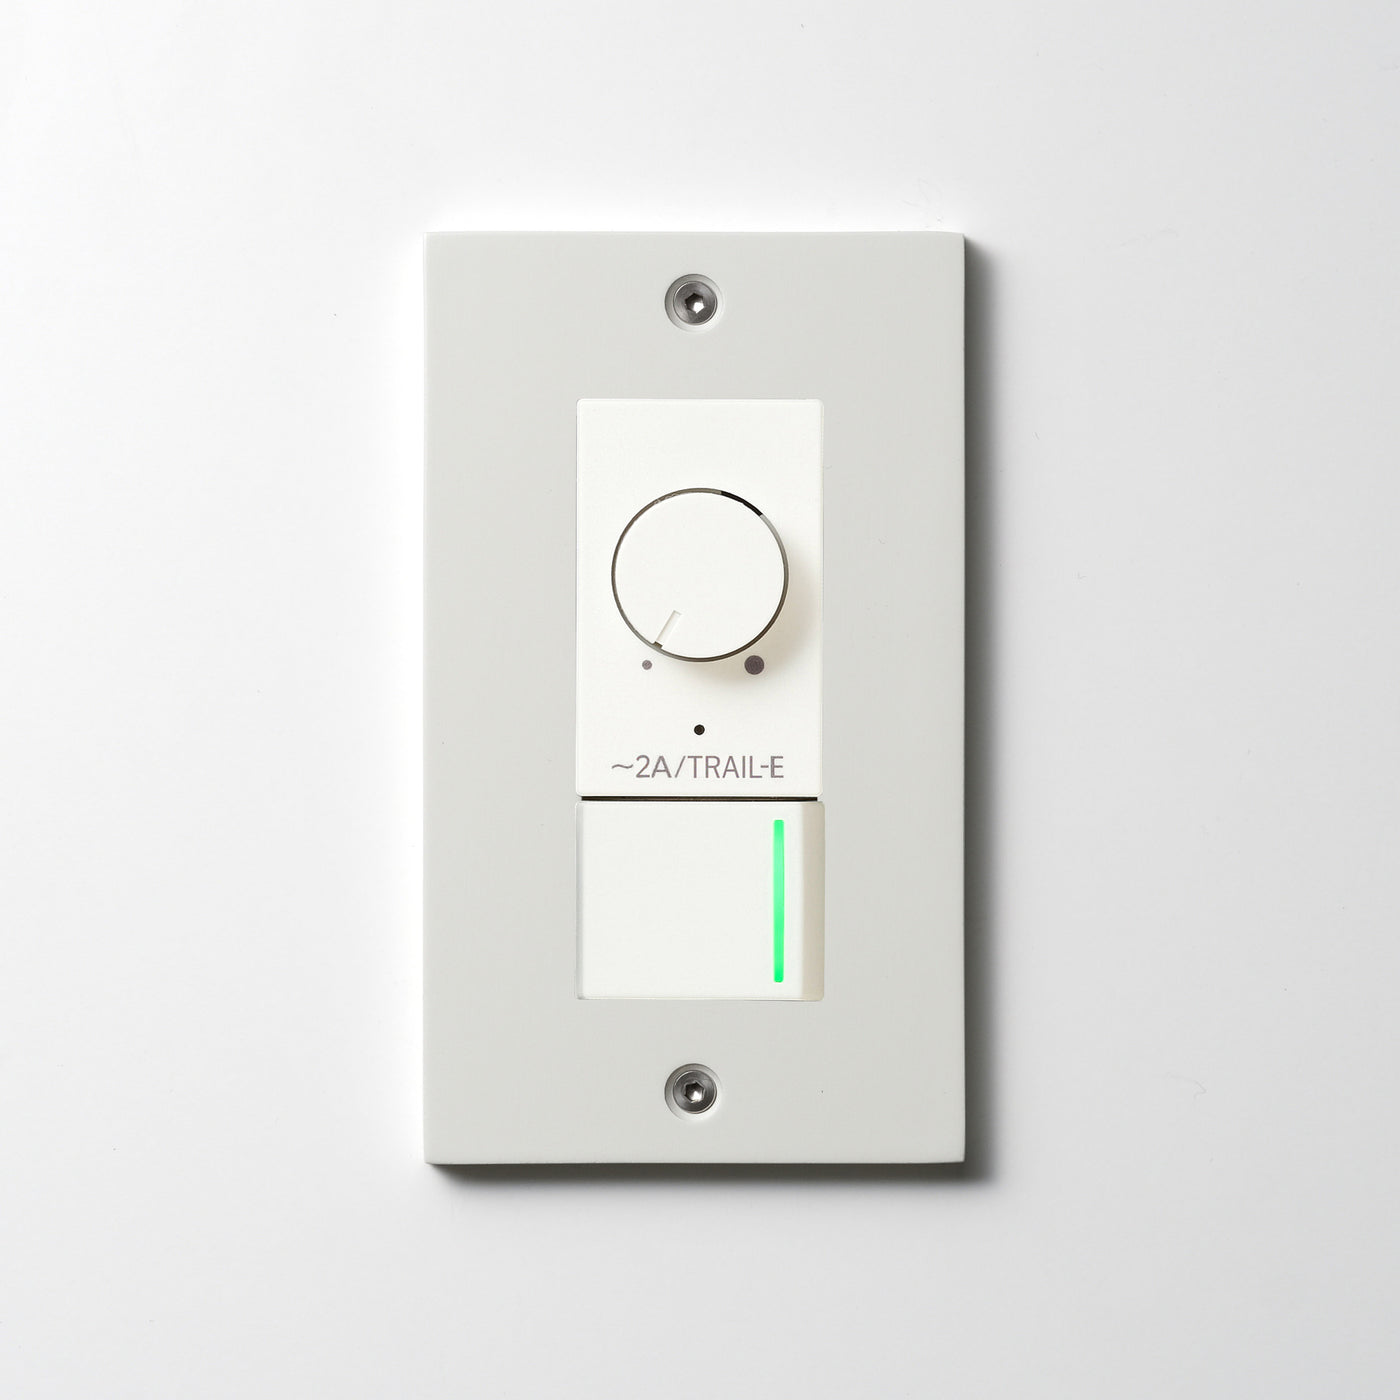 アルミダイキャスト（ホワイト）プレート  <br>+ NK 逆位相制御方式ライトコントロール＋片切、3路ガイドランプ（グリーン）スイッチ　 ホワイト